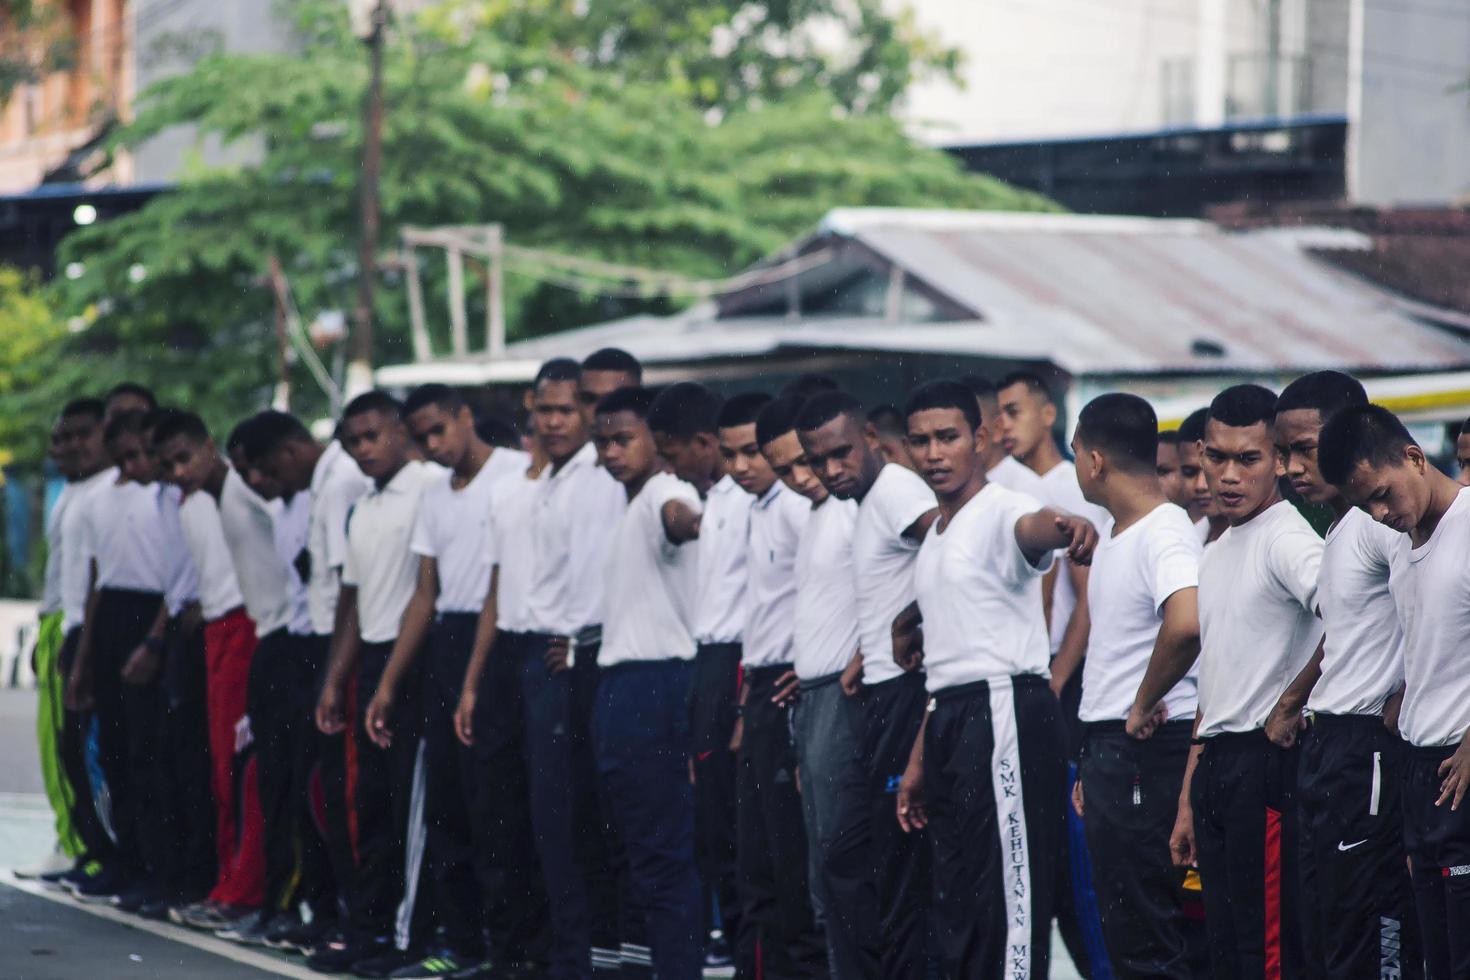 sorong, papouasie occidentale, indonésie 2021- candidats sous-officiers de la police indonésienne photo